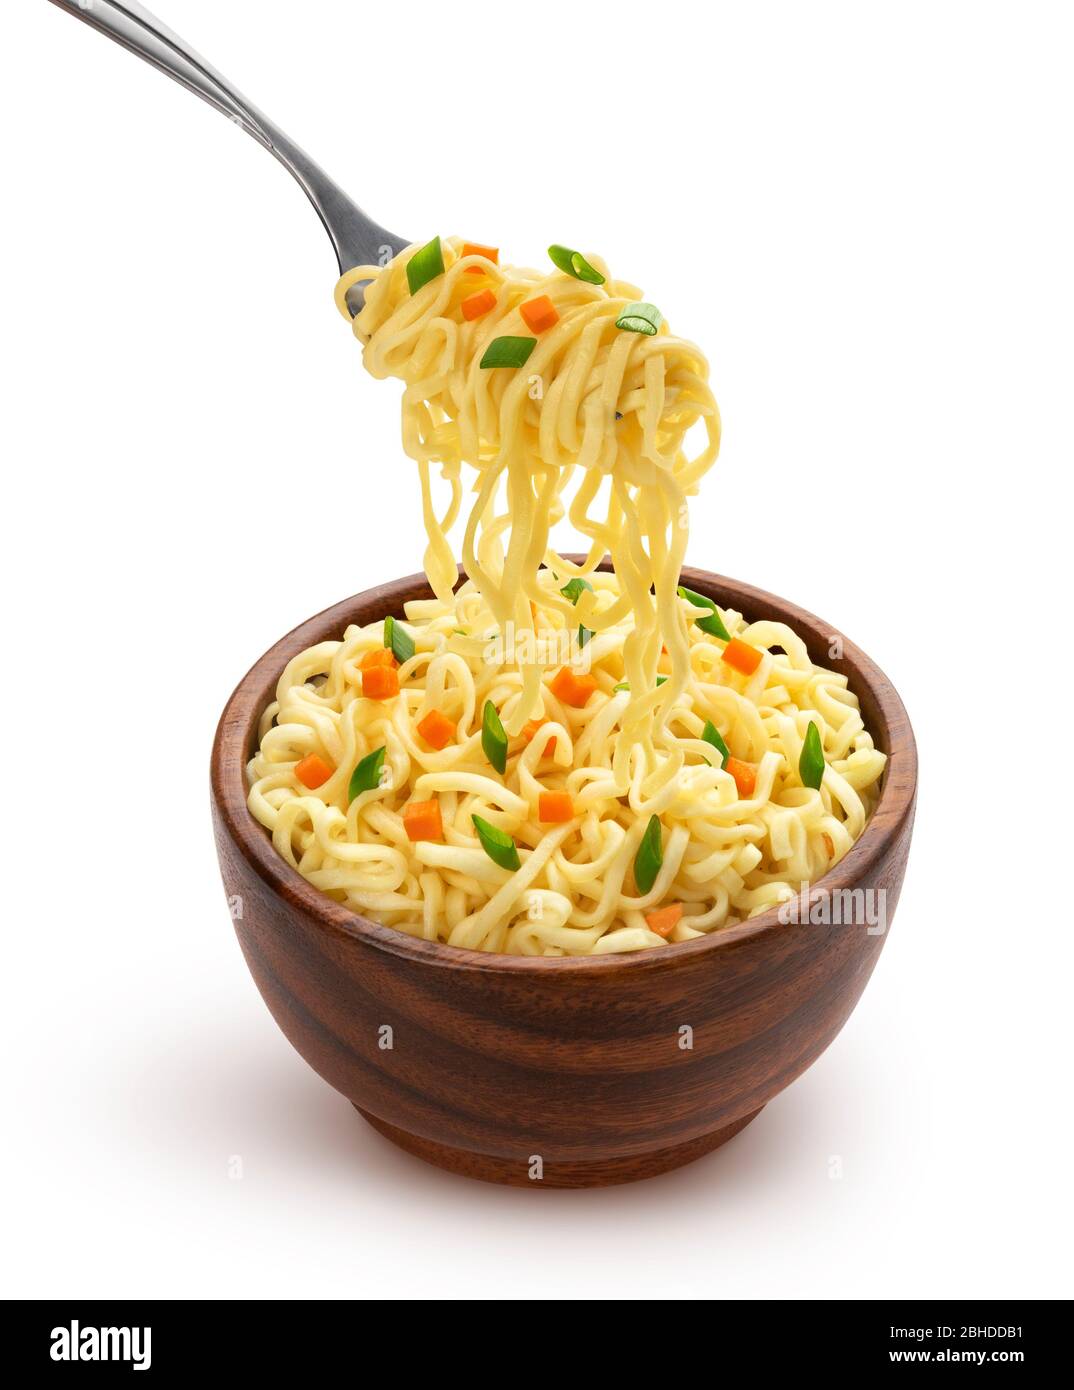 Noodles Background